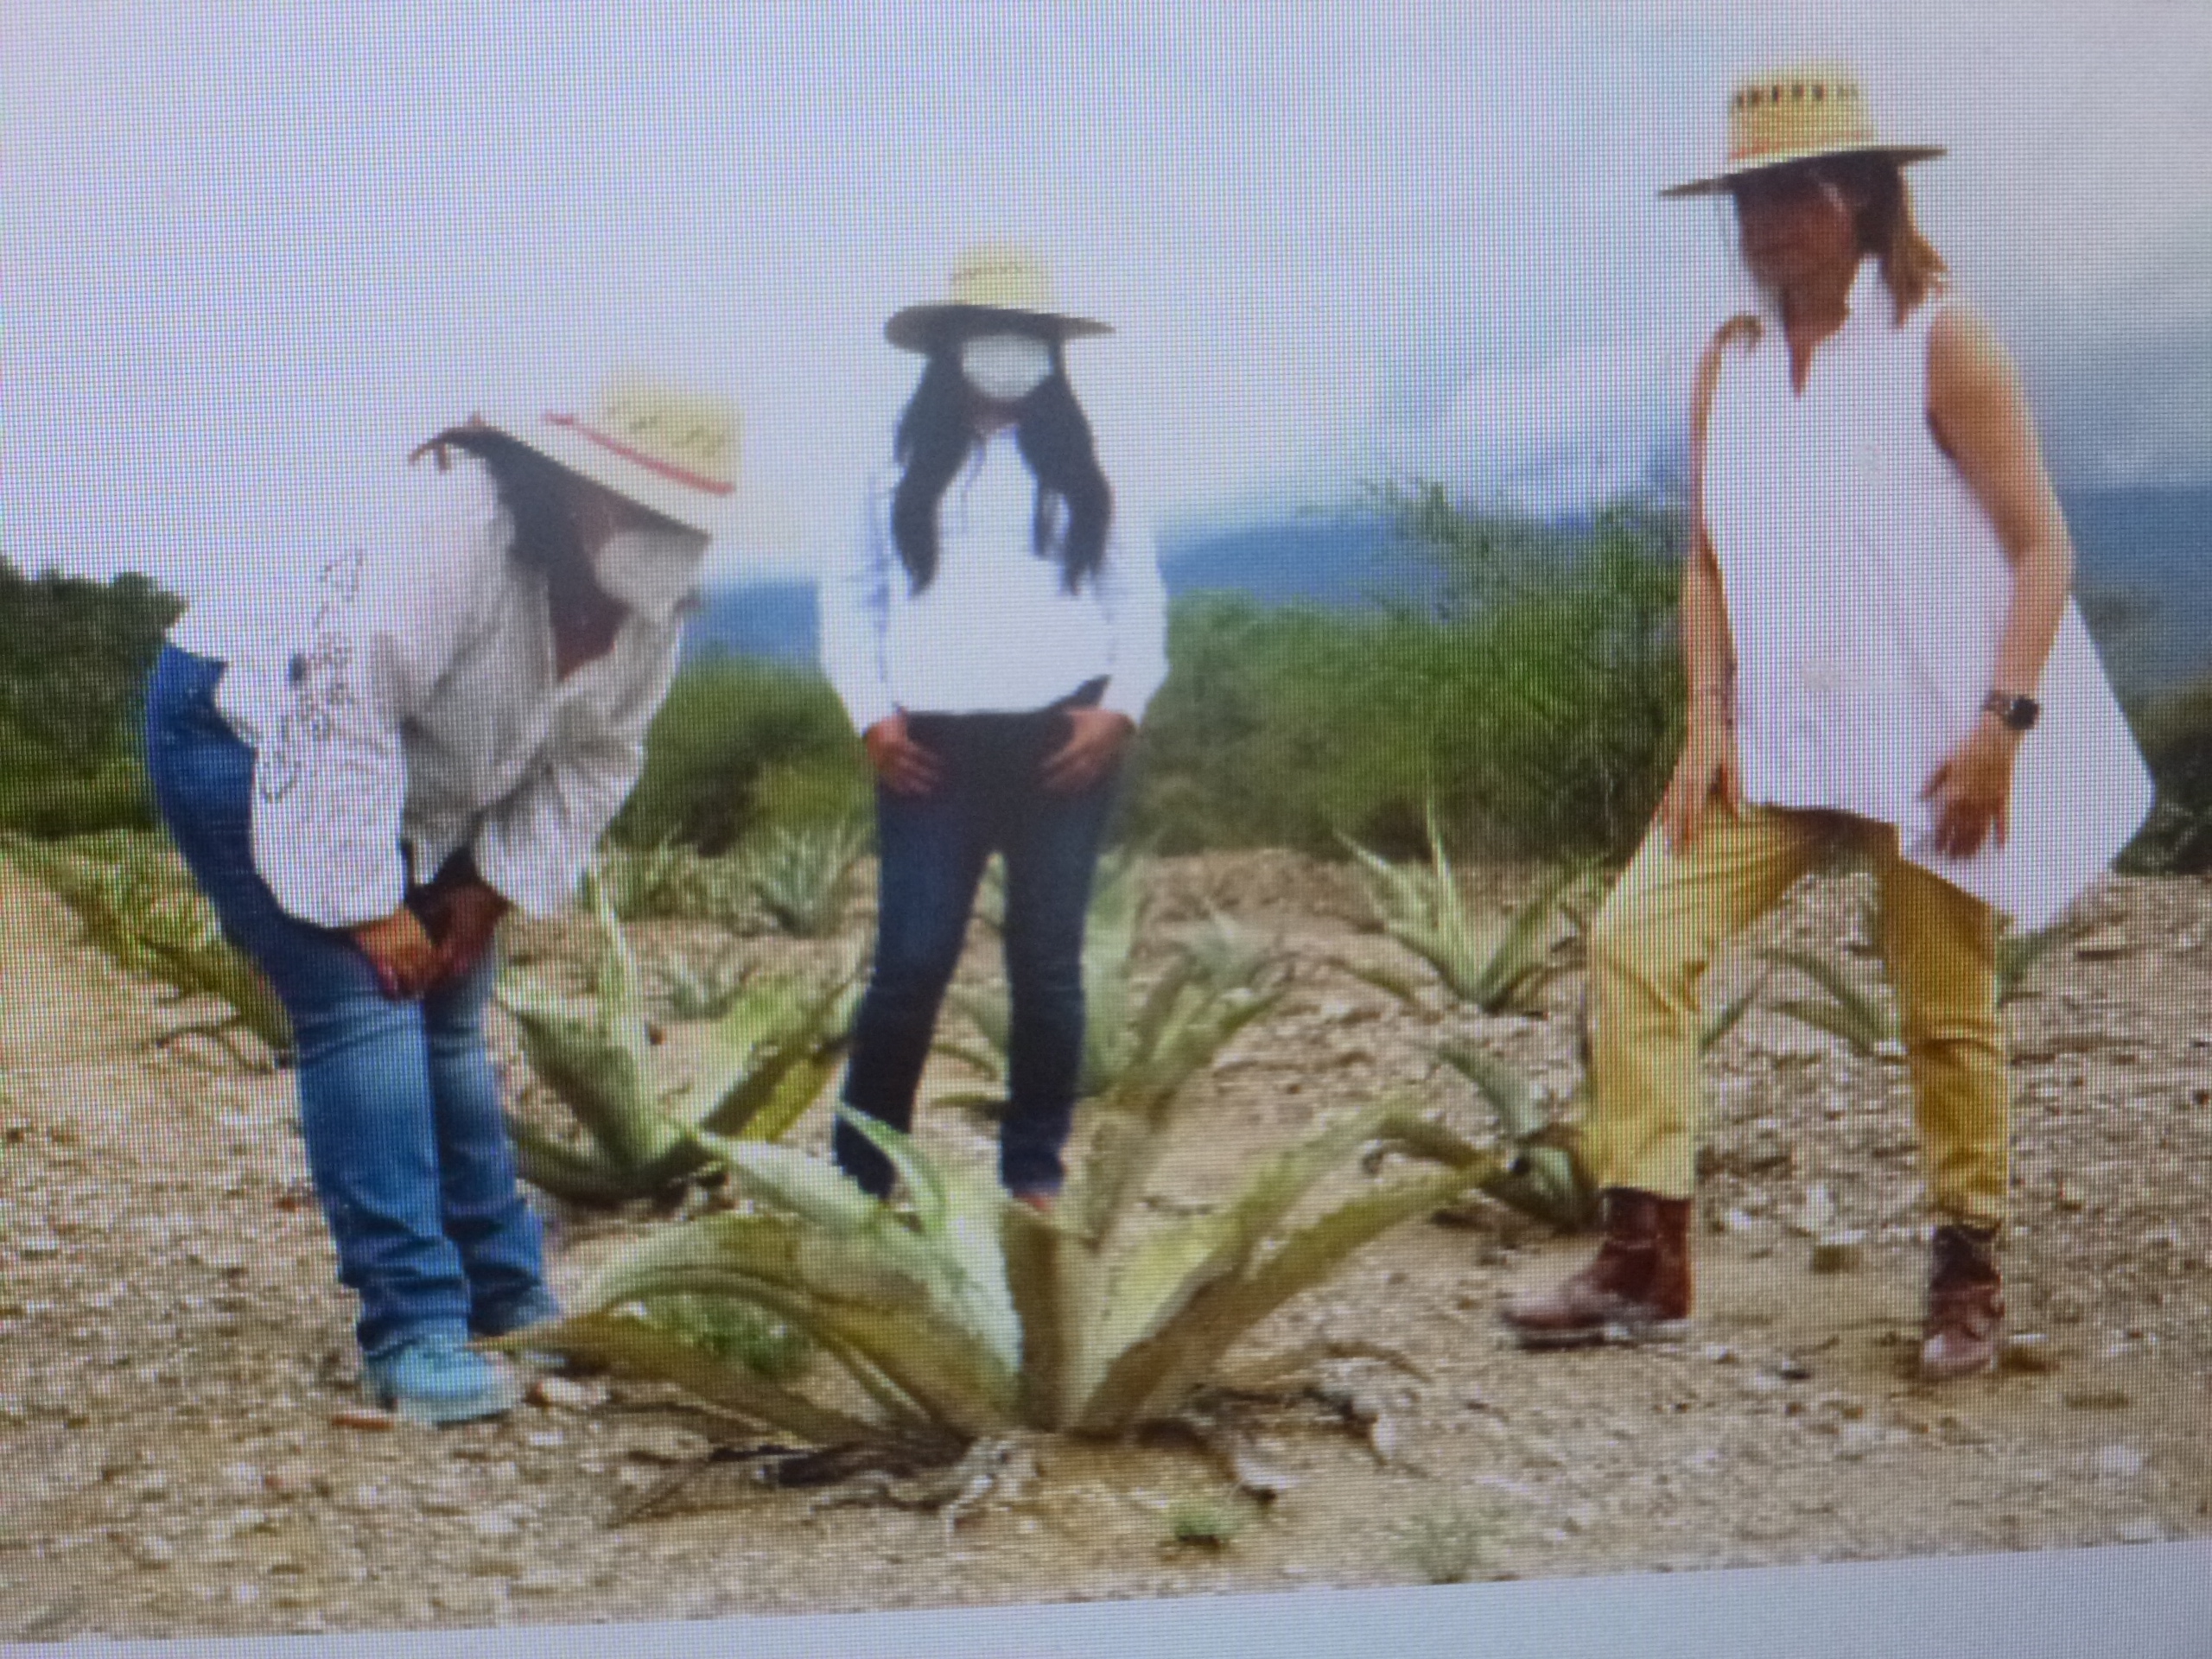 La Secretaría de Desarrollo Rural protege los agaves nativos en la Reserva de la Biósfera Tehuacán-Cuicatlán